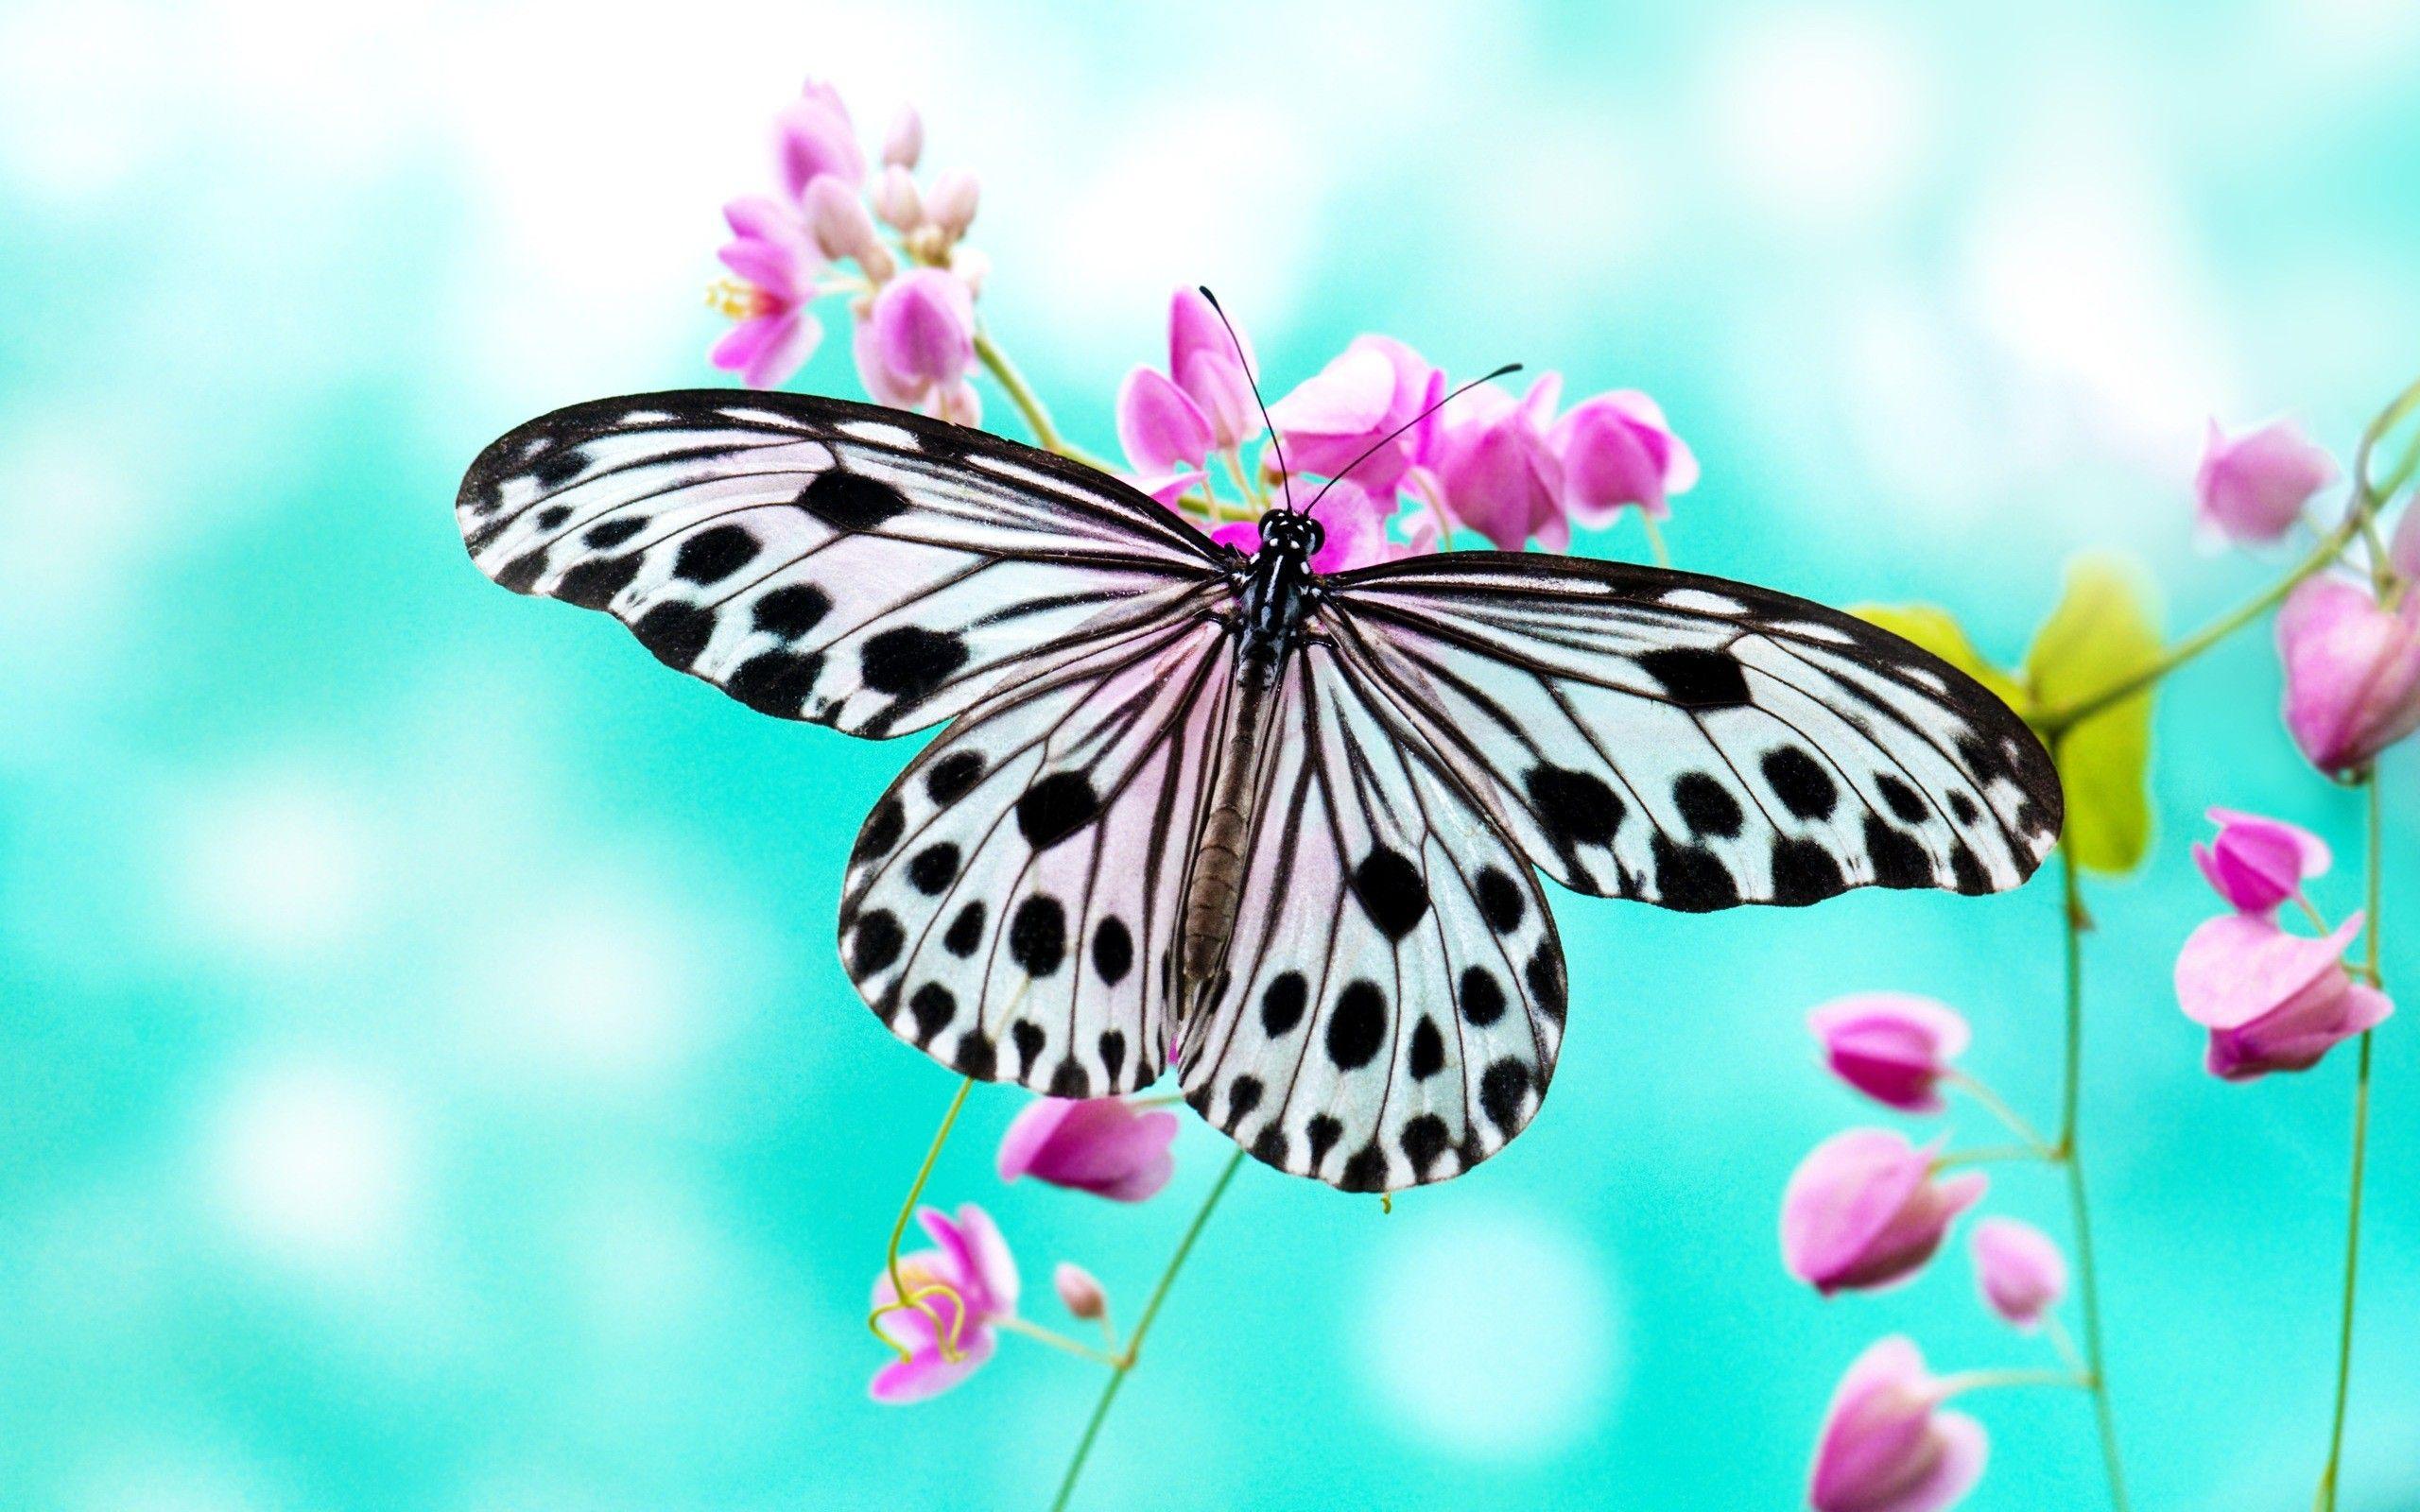 Butterfly wallpaperDownload free beautiful full HD wallpaper